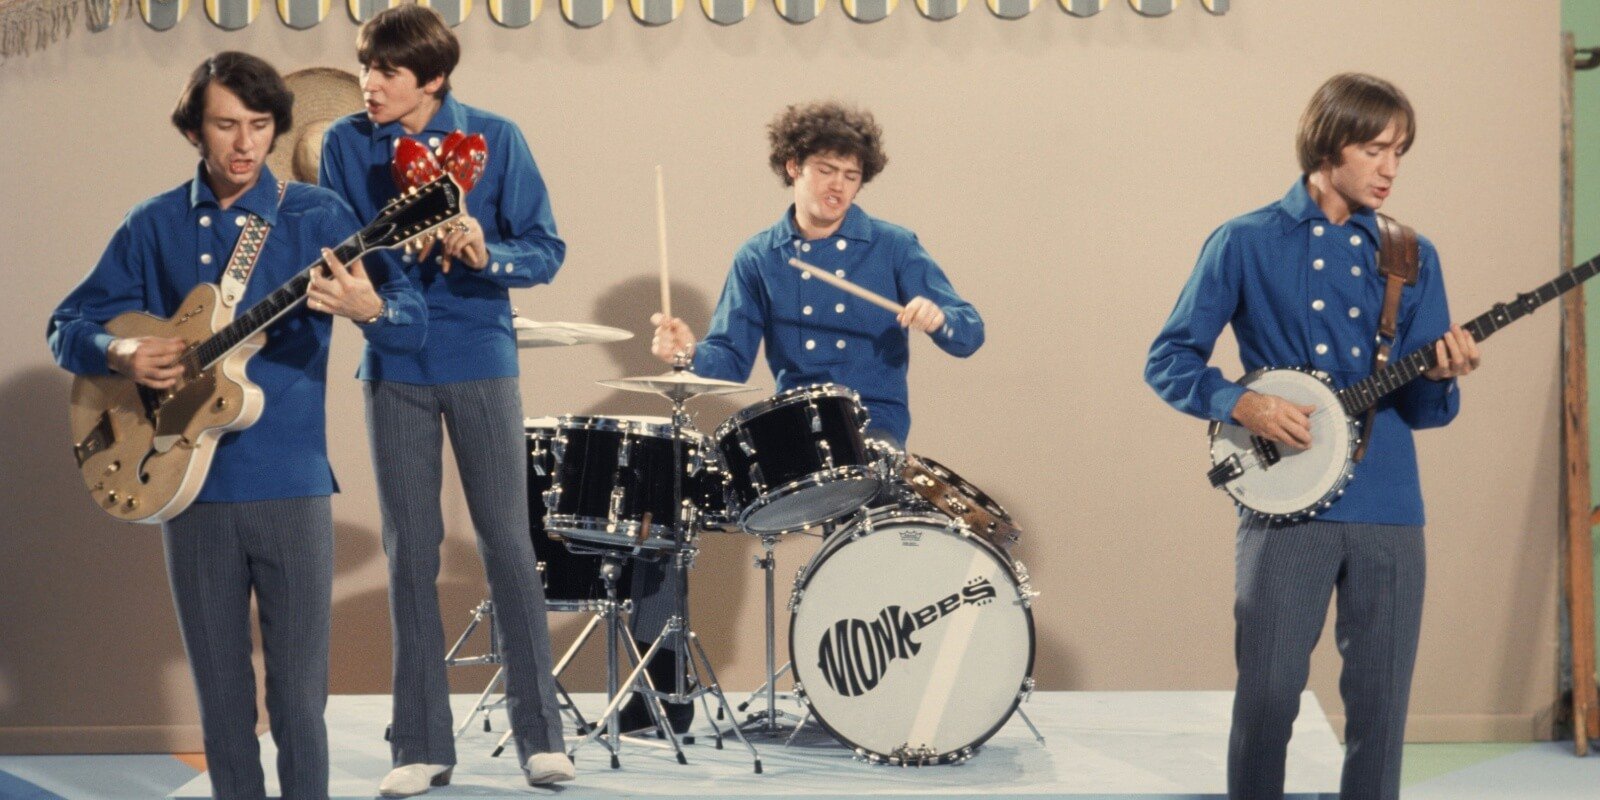 Peter Tork cho biết The Monkees 'Chưa bao giờ diễn tập' trước khi đưa TV 'Phi hành đoàn khiêu vũ'